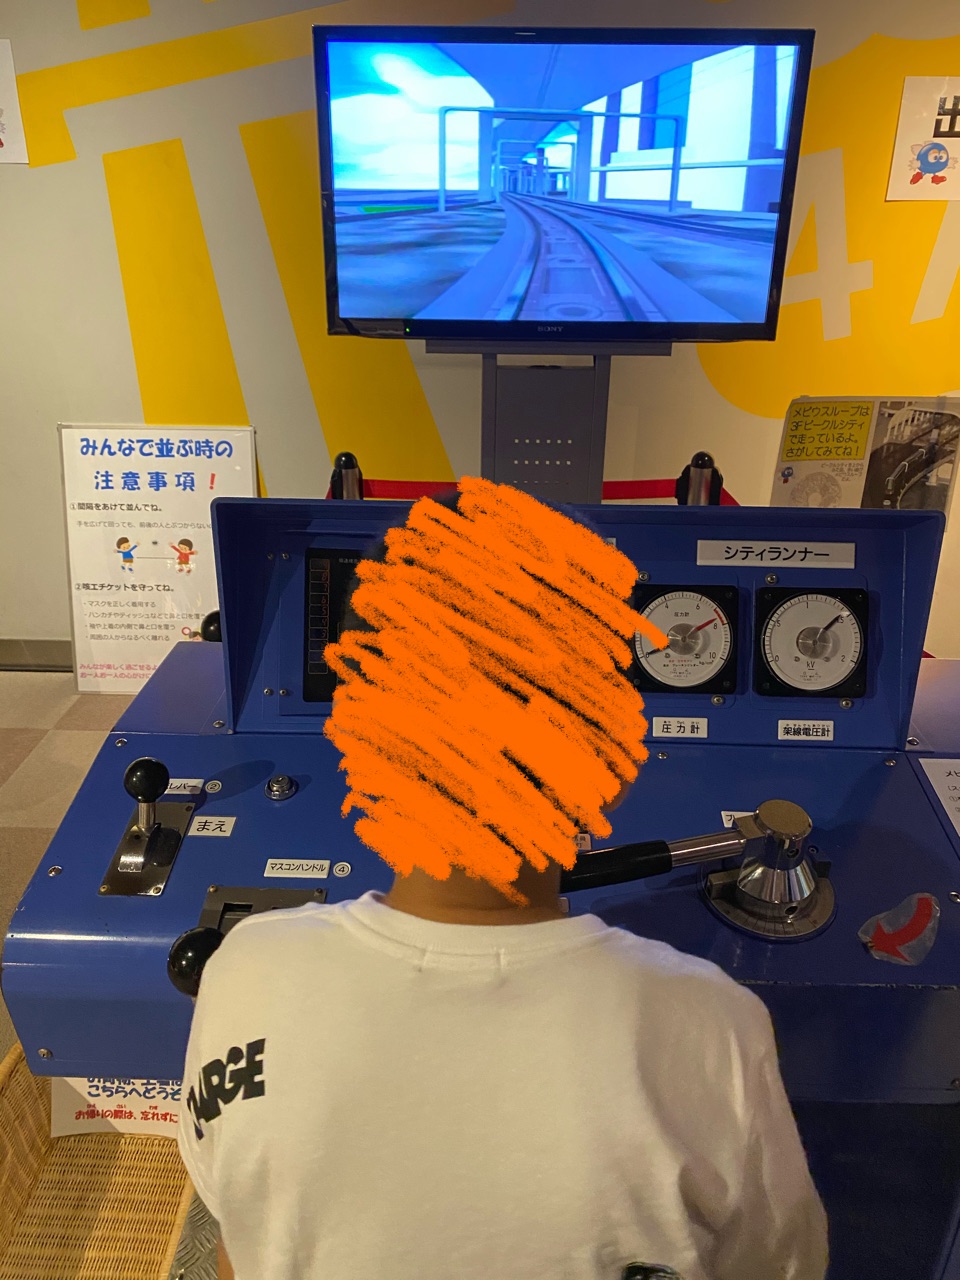 ヌマジ交通ミュージアム(広島市交通科学館)の電車操縦体験